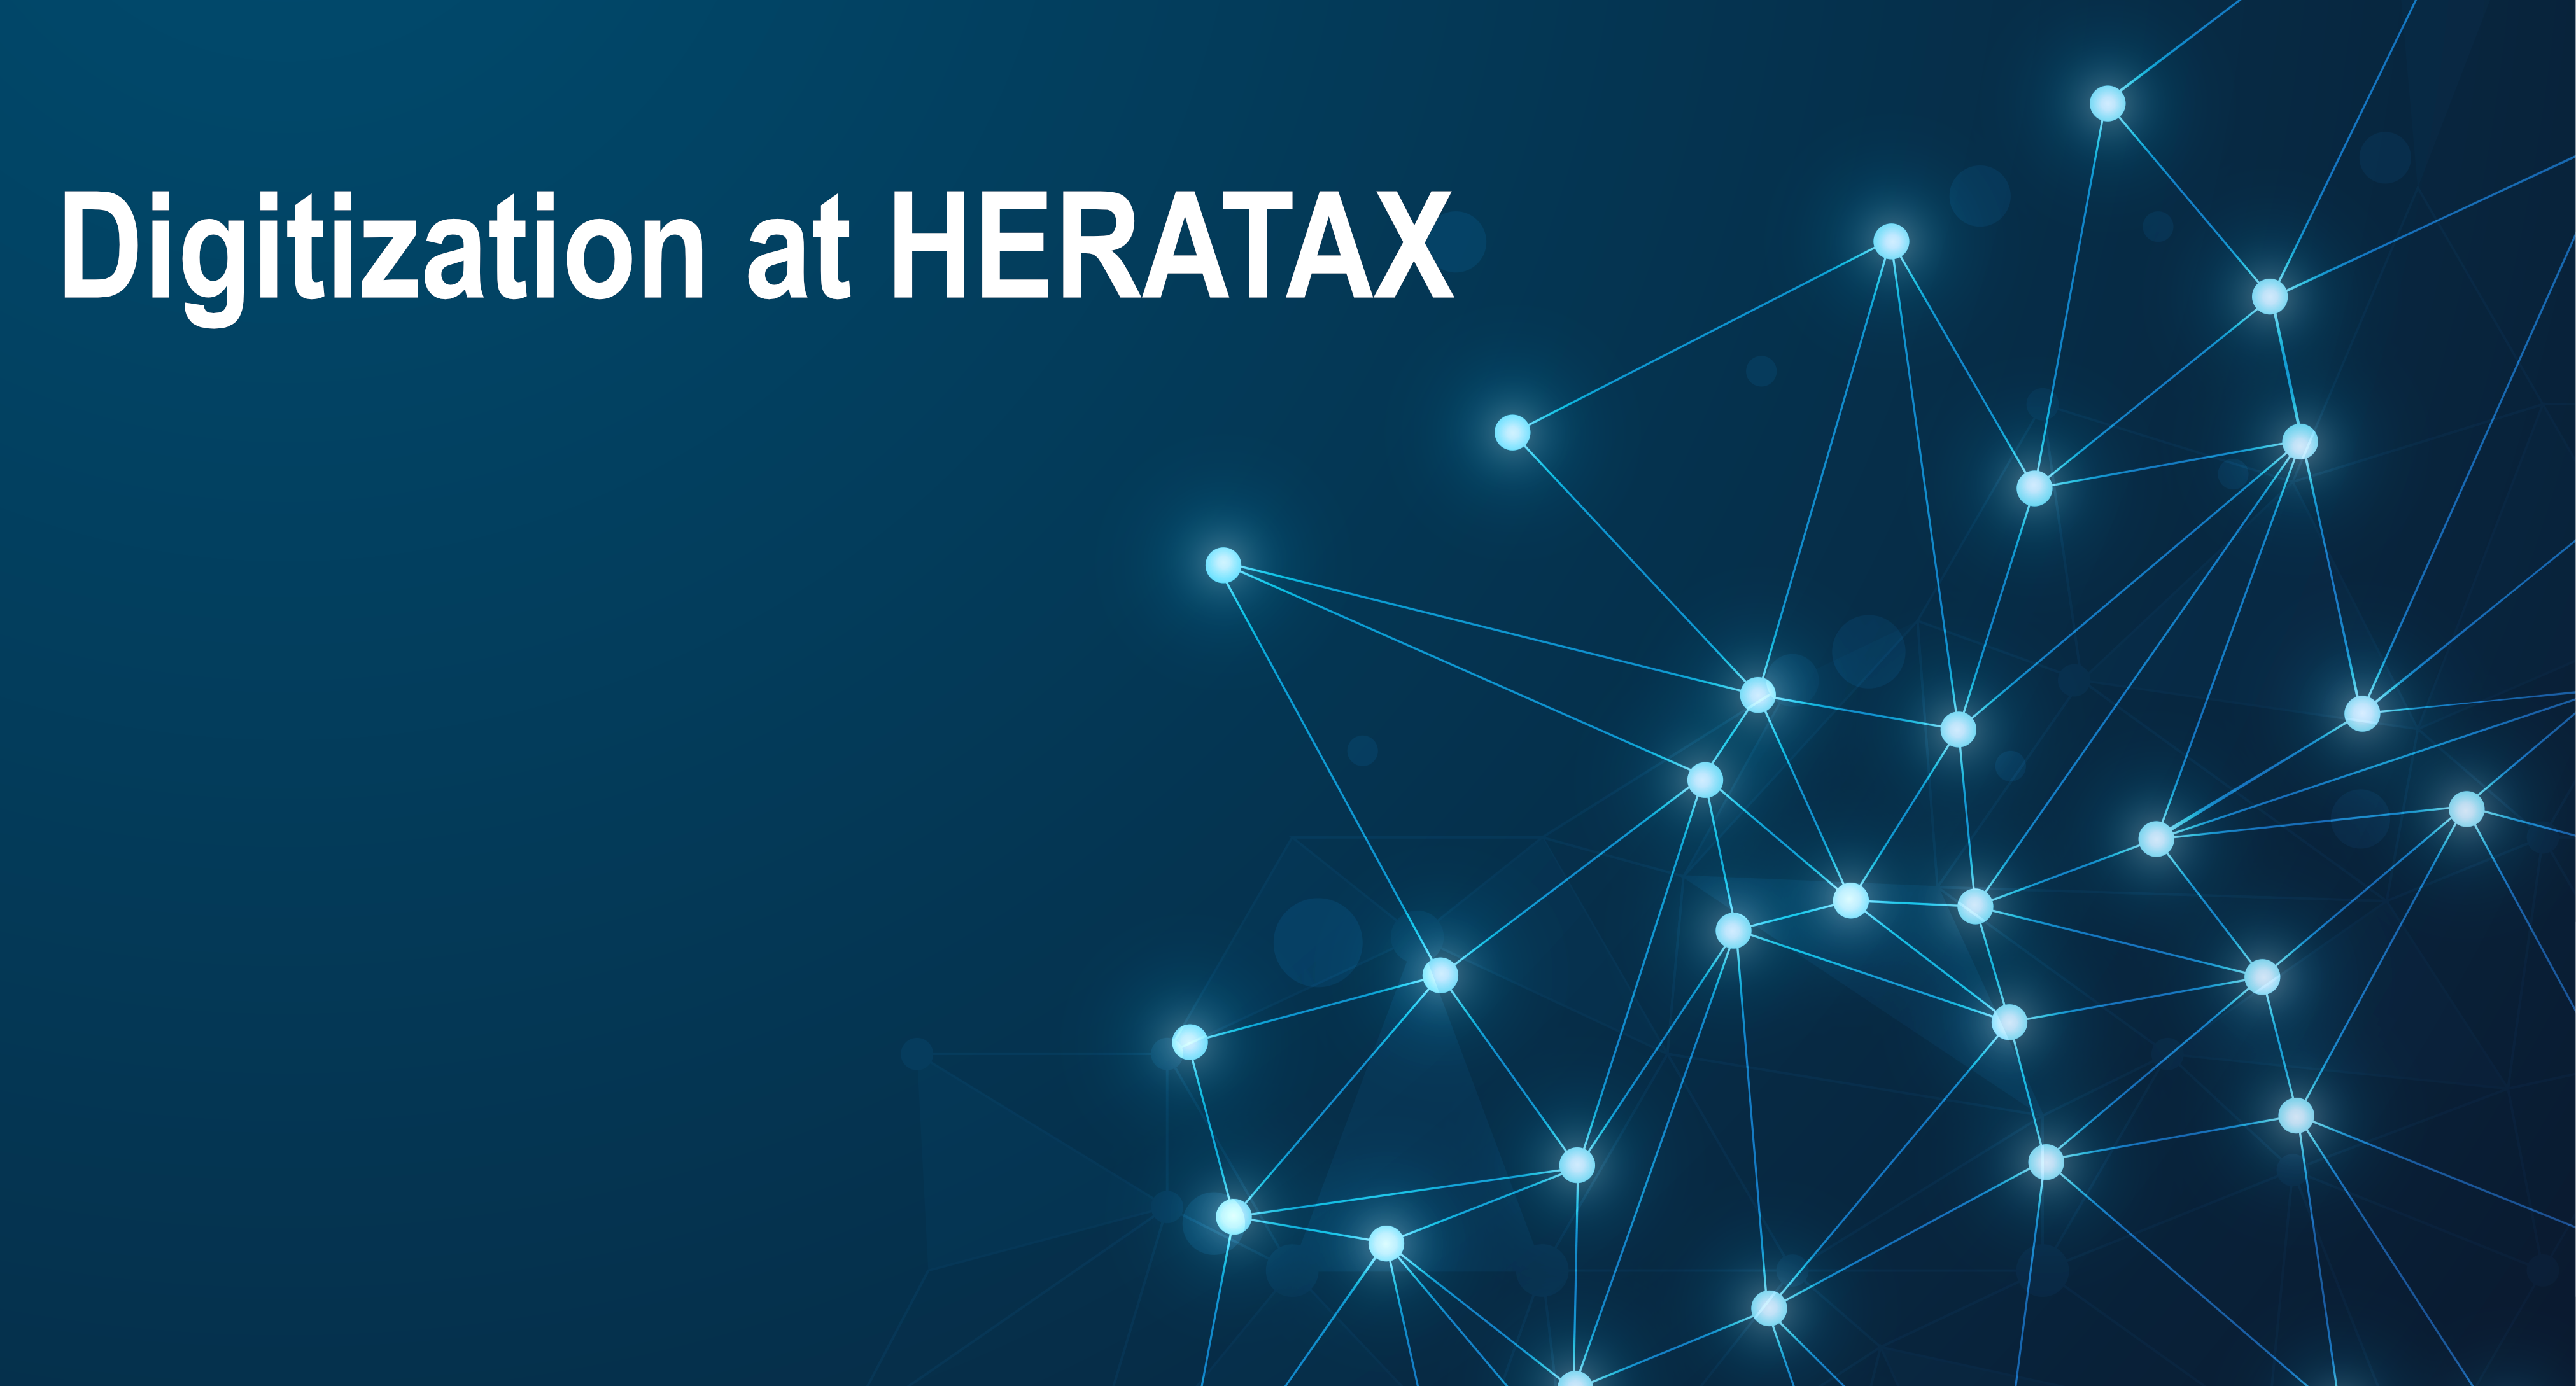 Schaubild Digitalisierung bei HERATAX Steuerberater Hamburg mit Netzwerk Punkten und Verknüpfungen in blau weiß leuchtend